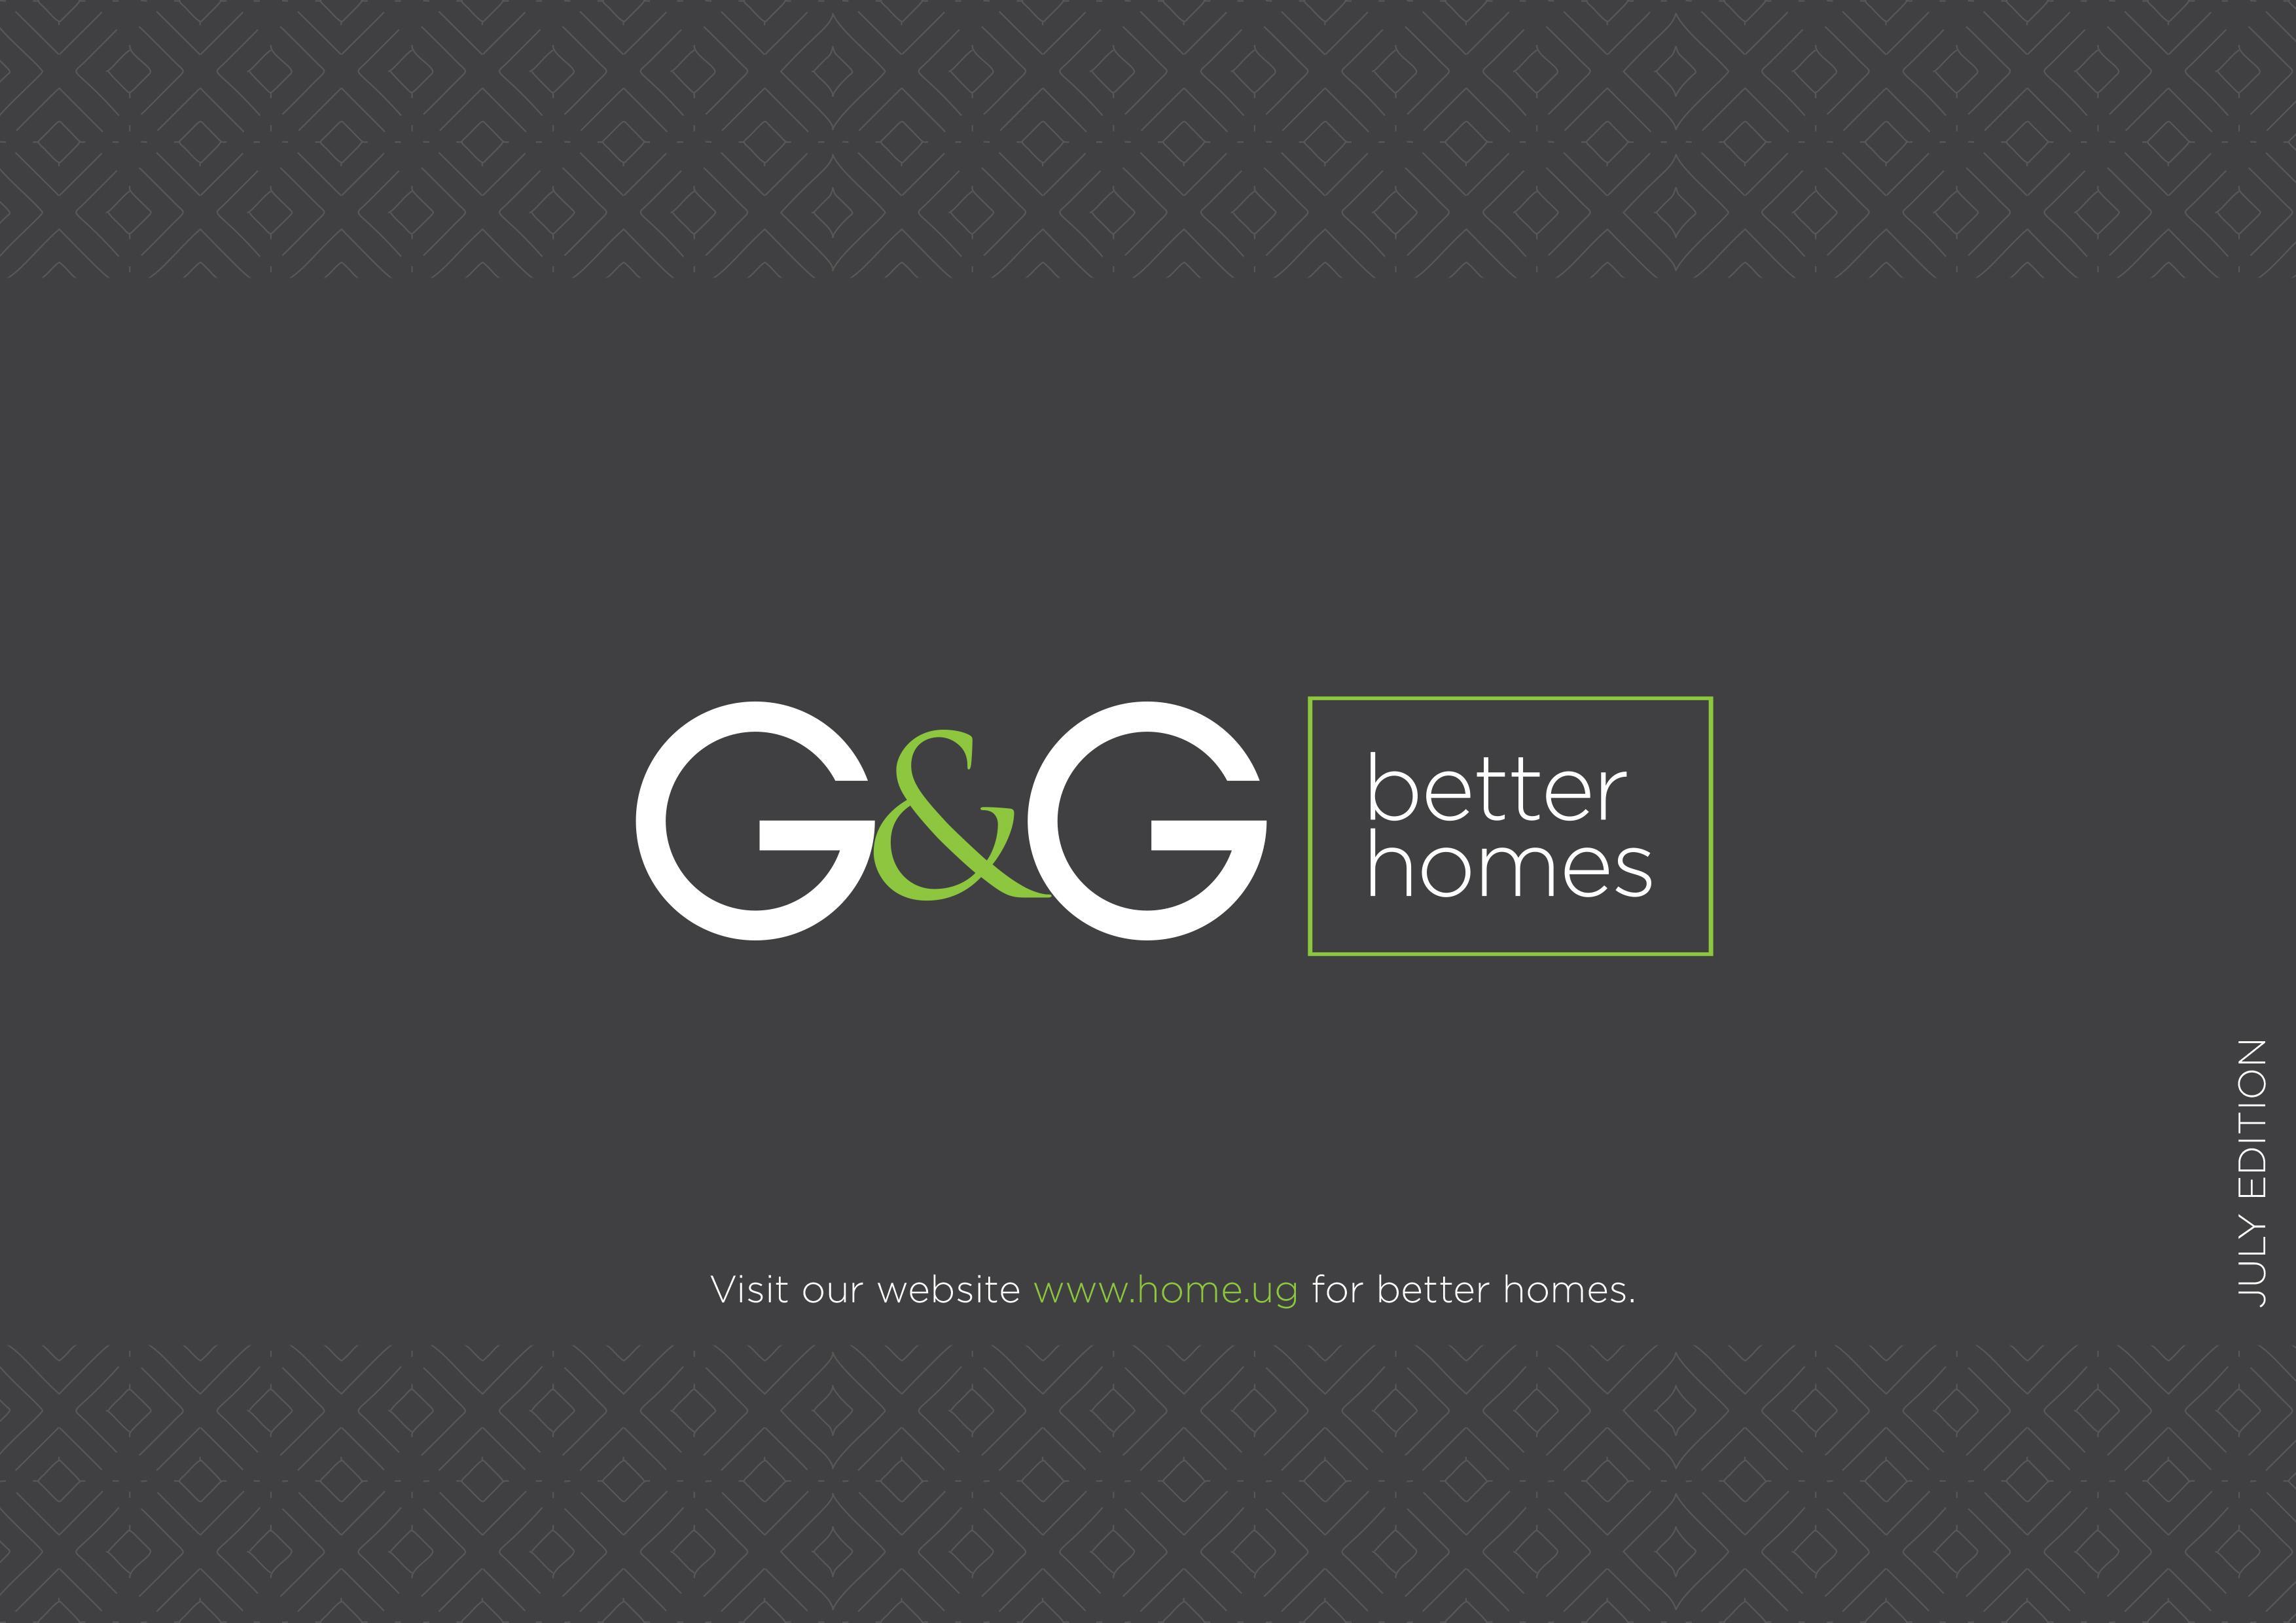 Poet Logo - G&G better homes